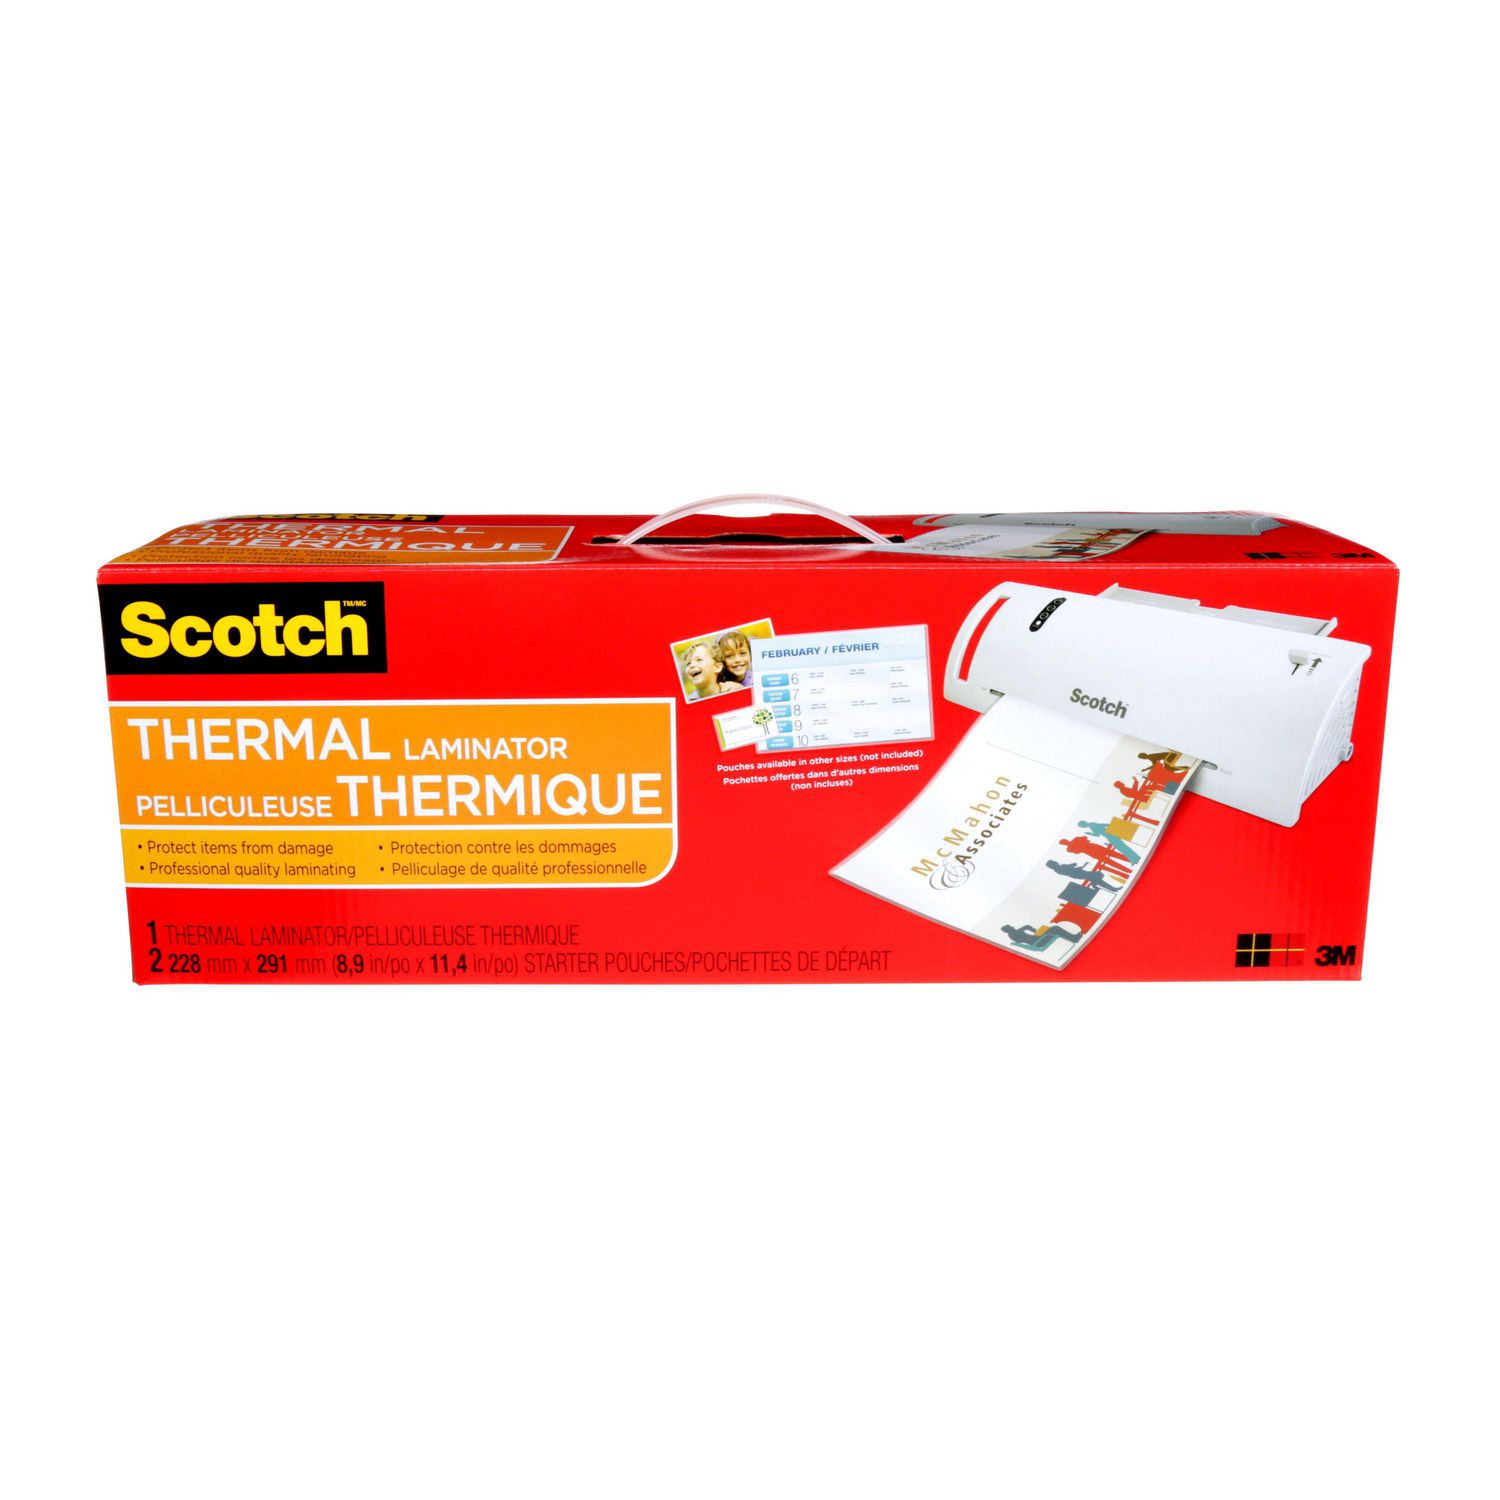 Pelliculeuse thermique Scotch® TL902-C 1 Pelliculeuse, 2